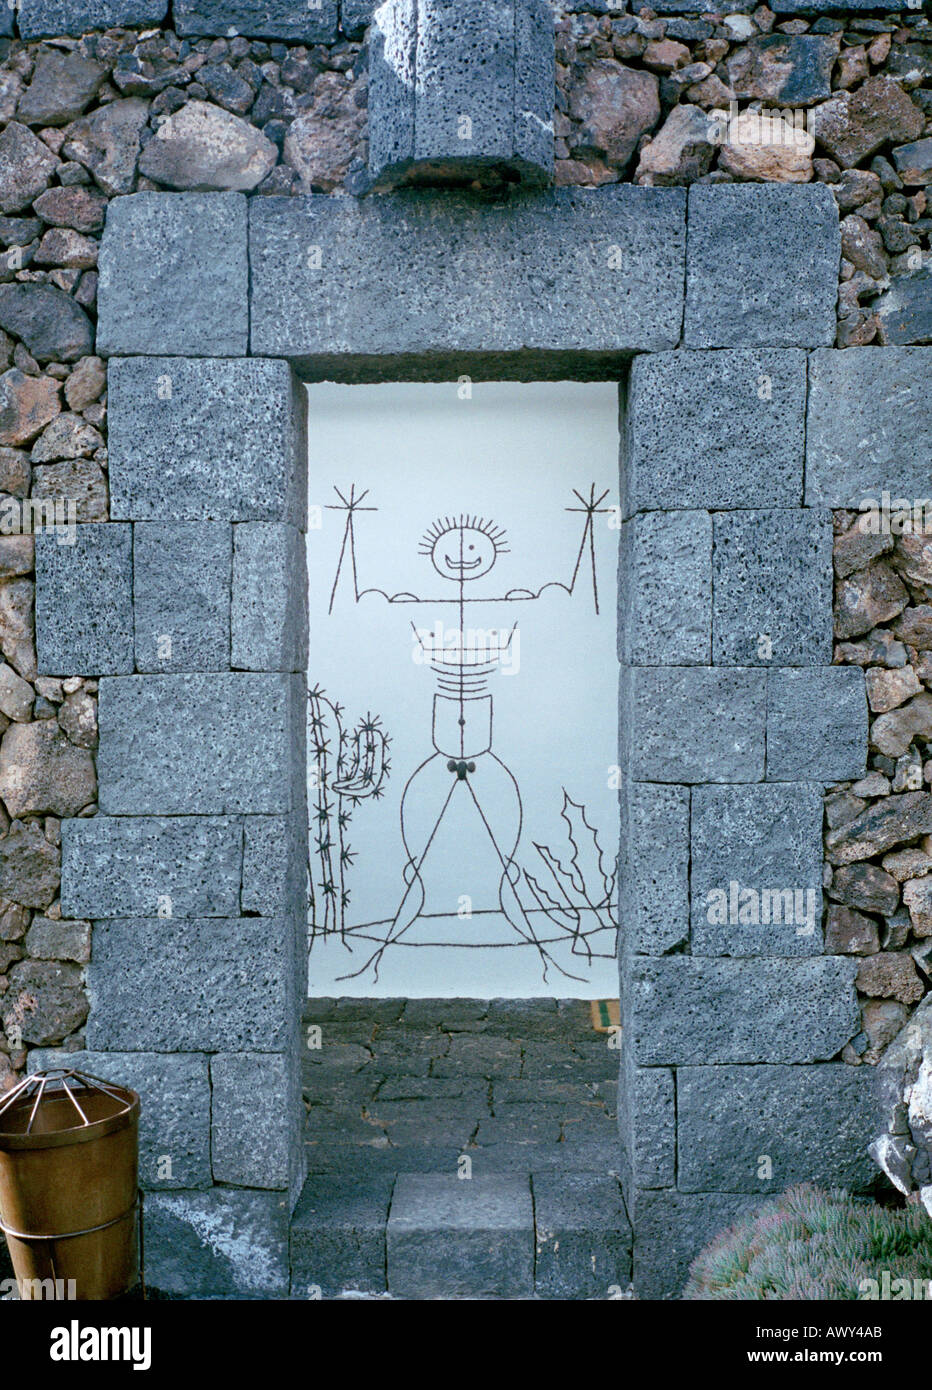 L'uomo cartoon di Cesar Manrique presso il giardino dei cactus a Lanzarote Island per indicare i servizi igienici pubblici Foto Stock